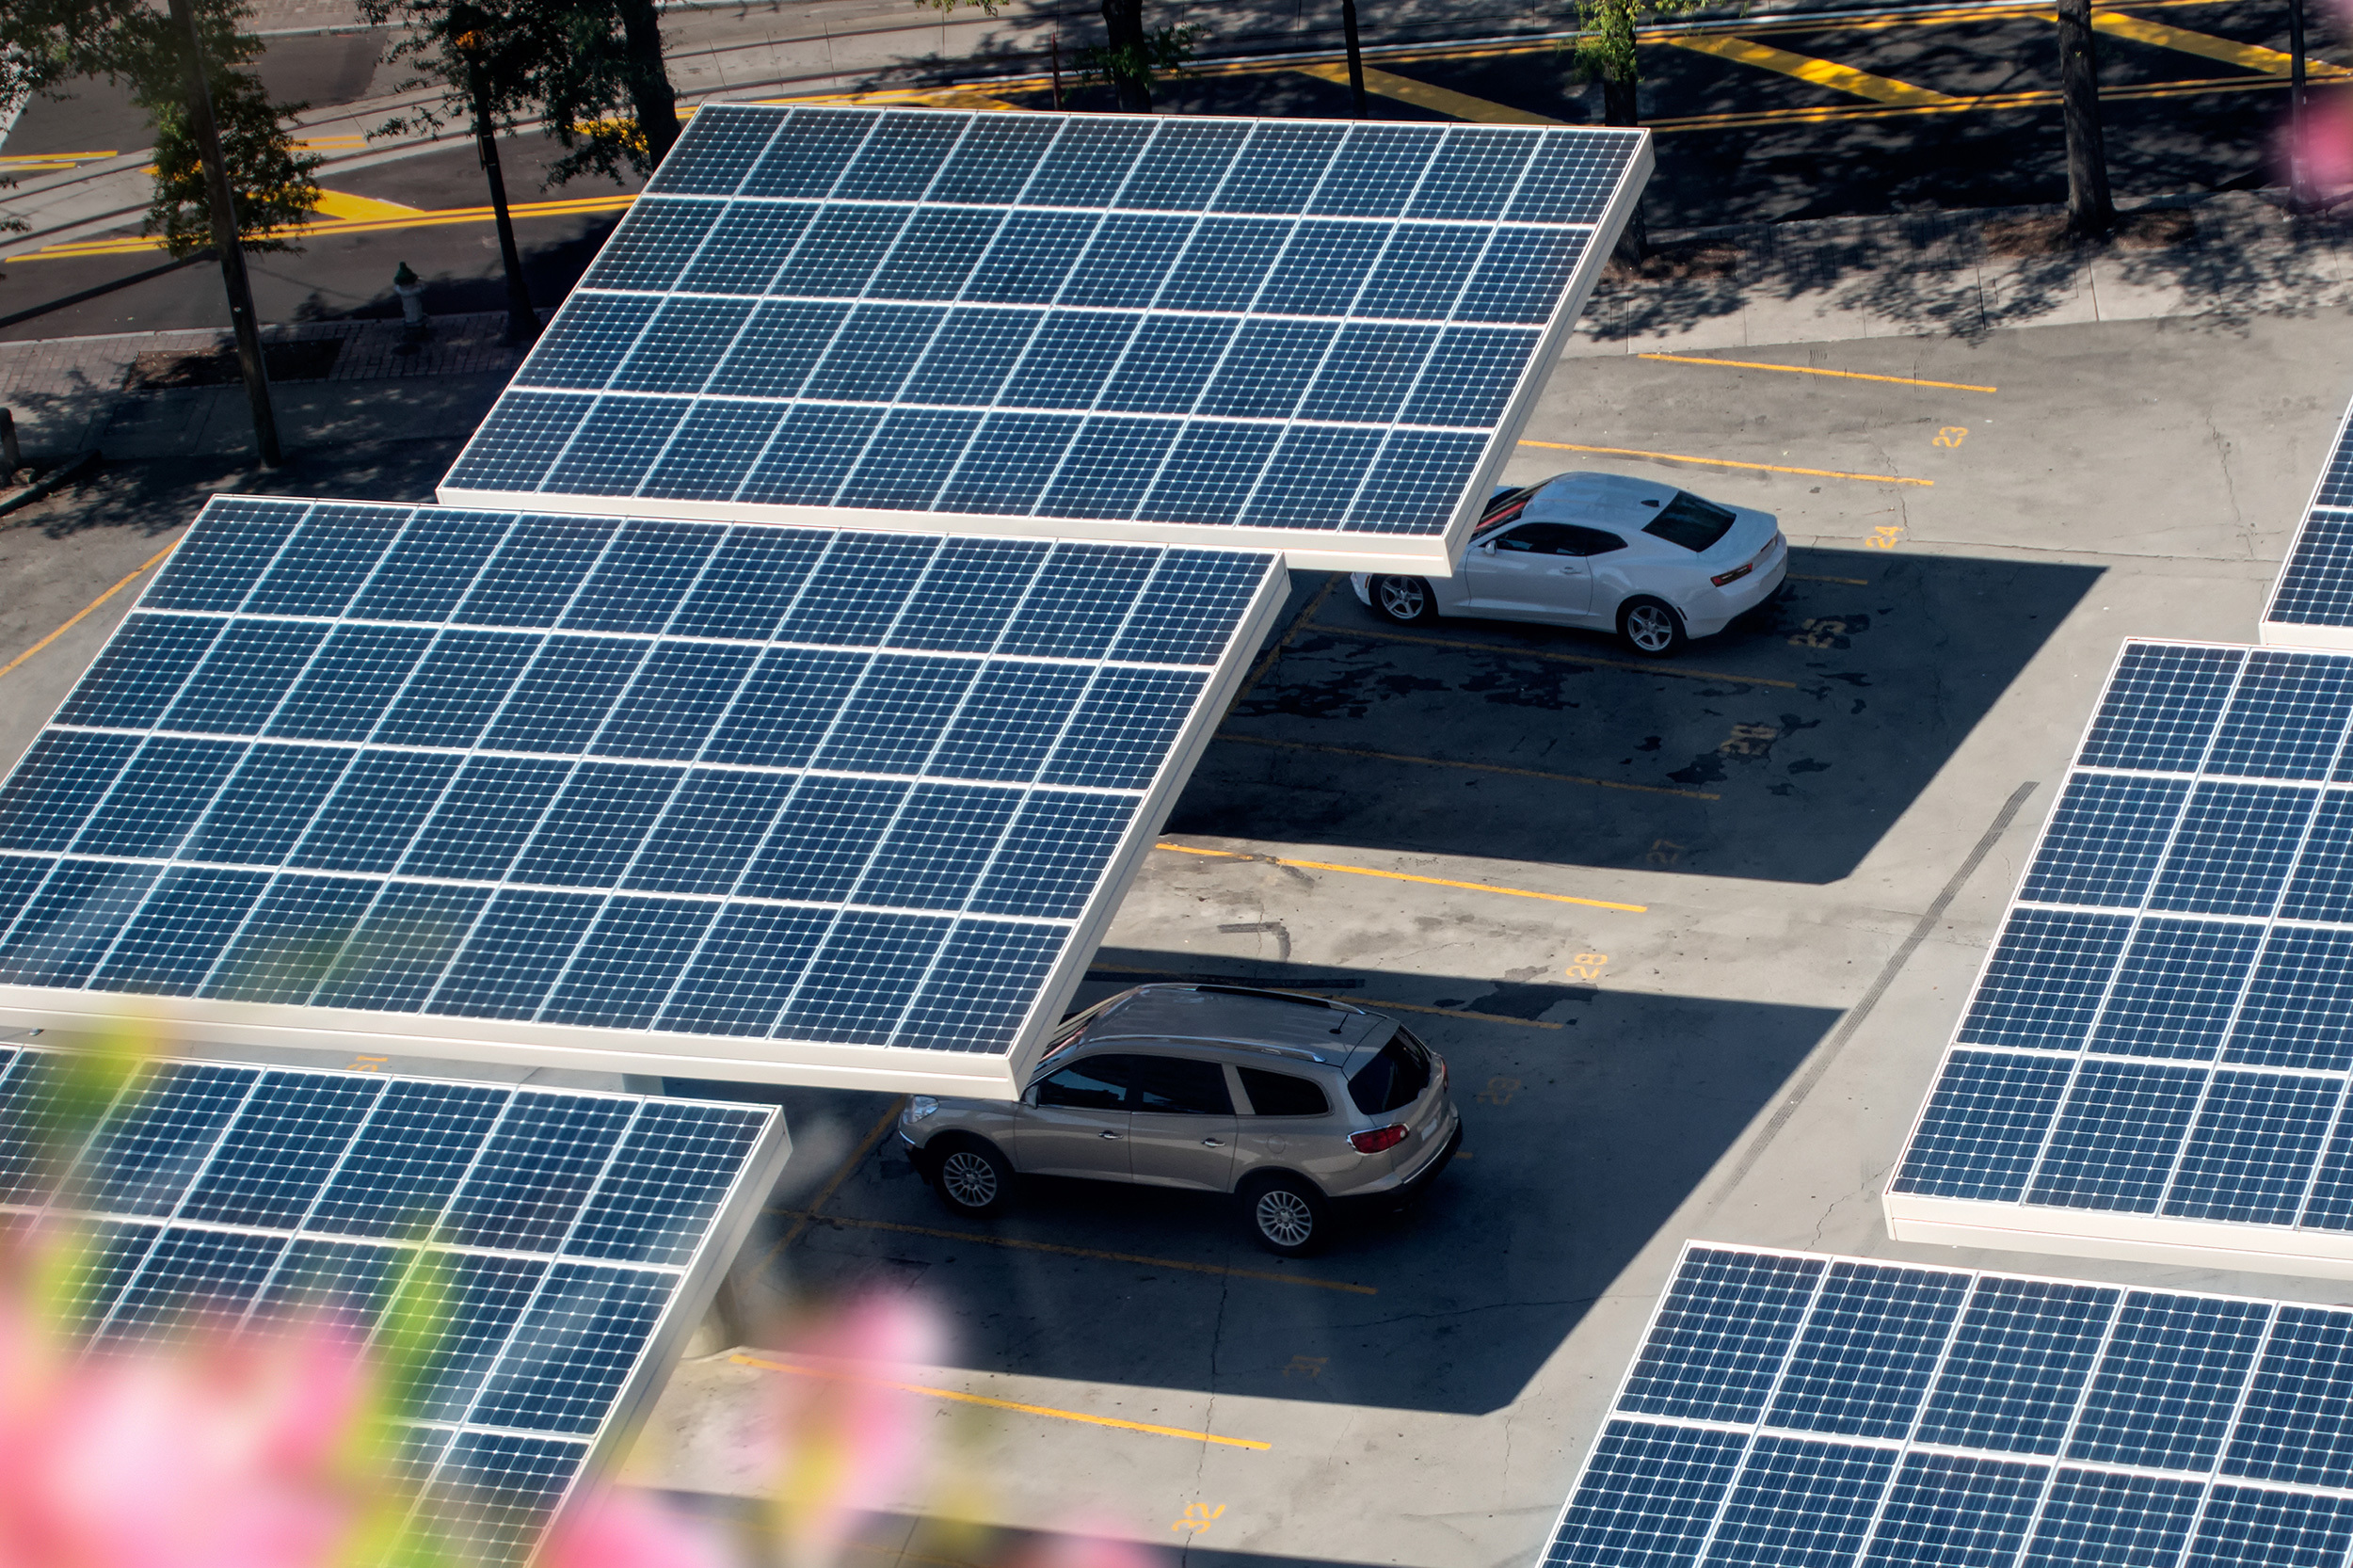 áreas de recarga de carros elétricos e híbridos com painéis fotovoltaicos